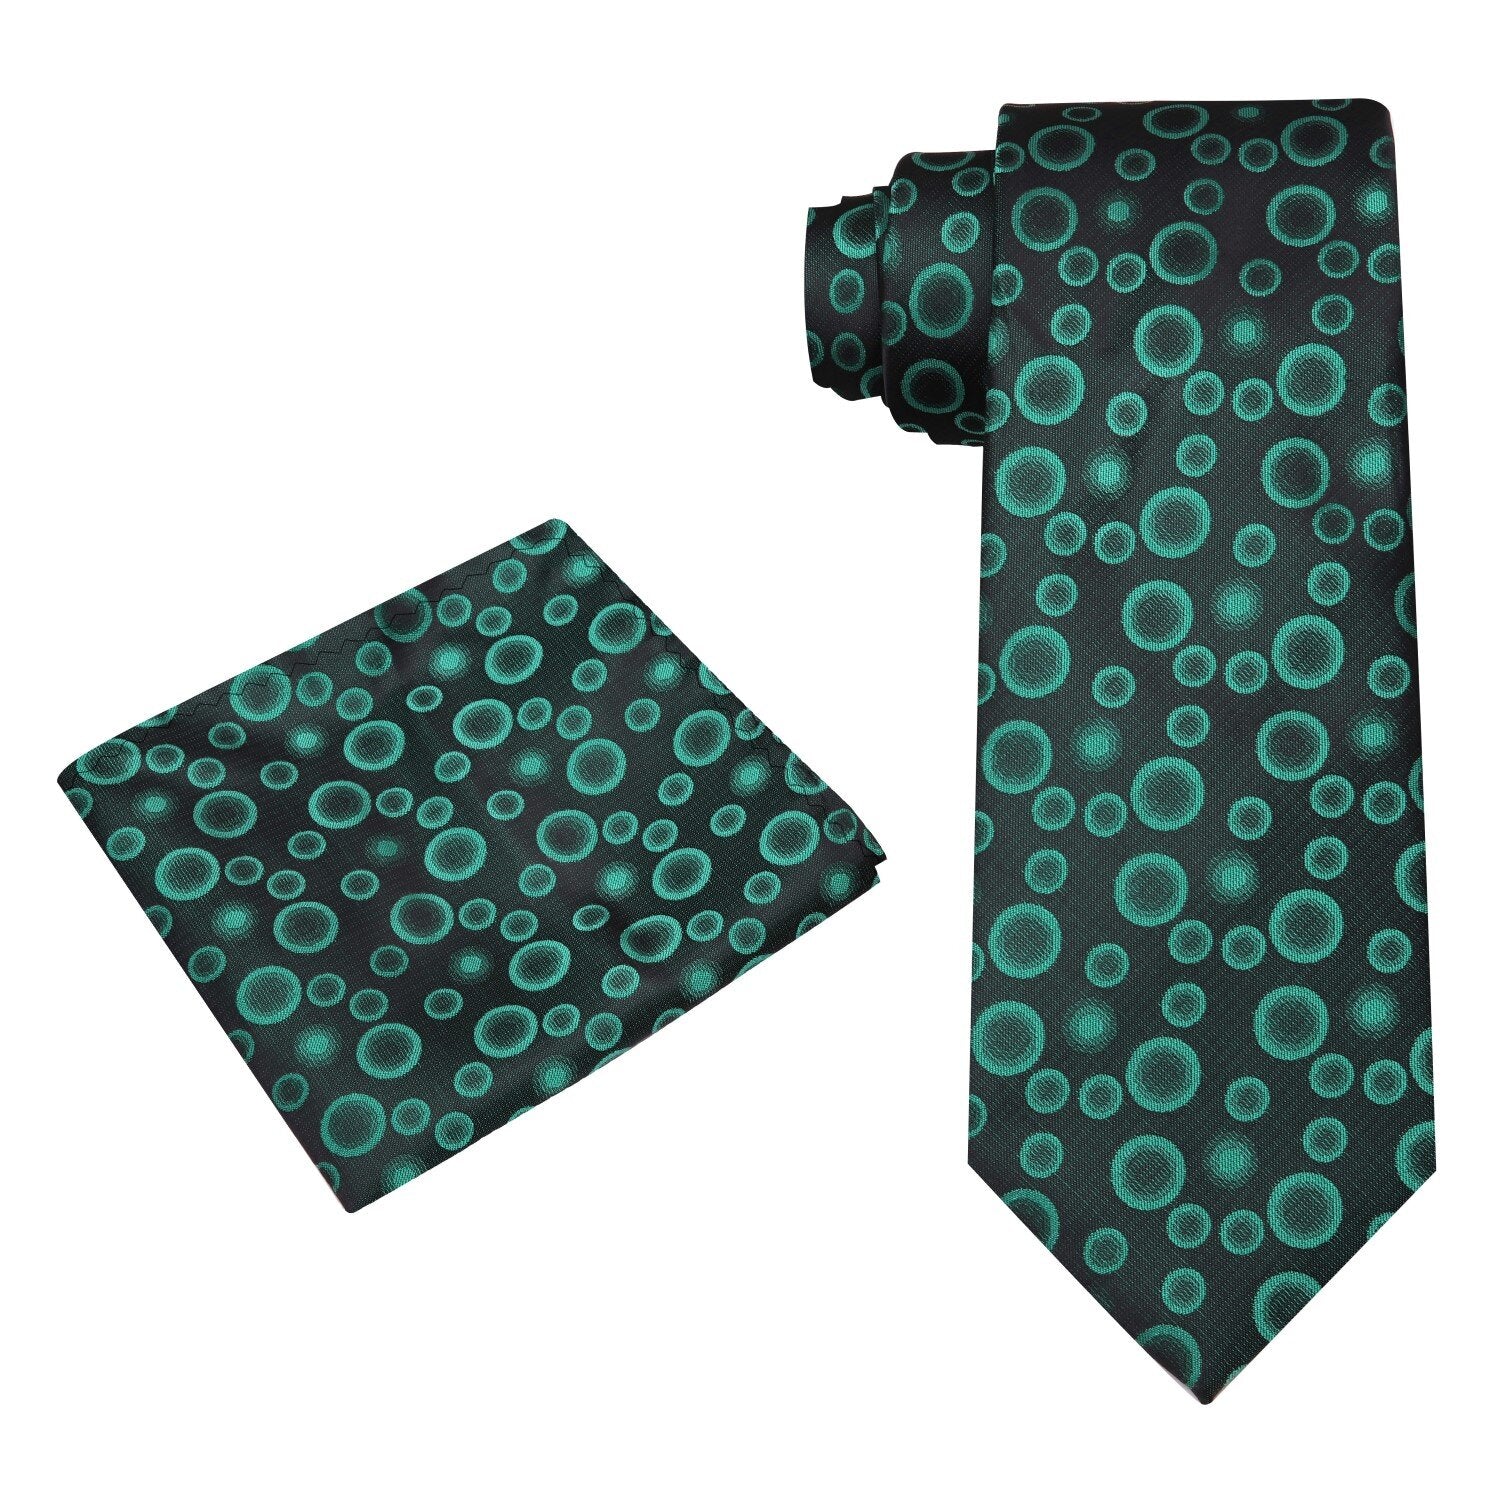 Alt View: A Dark Green Polka Dot Pattern Silk Necktie, Matching Pocket Square